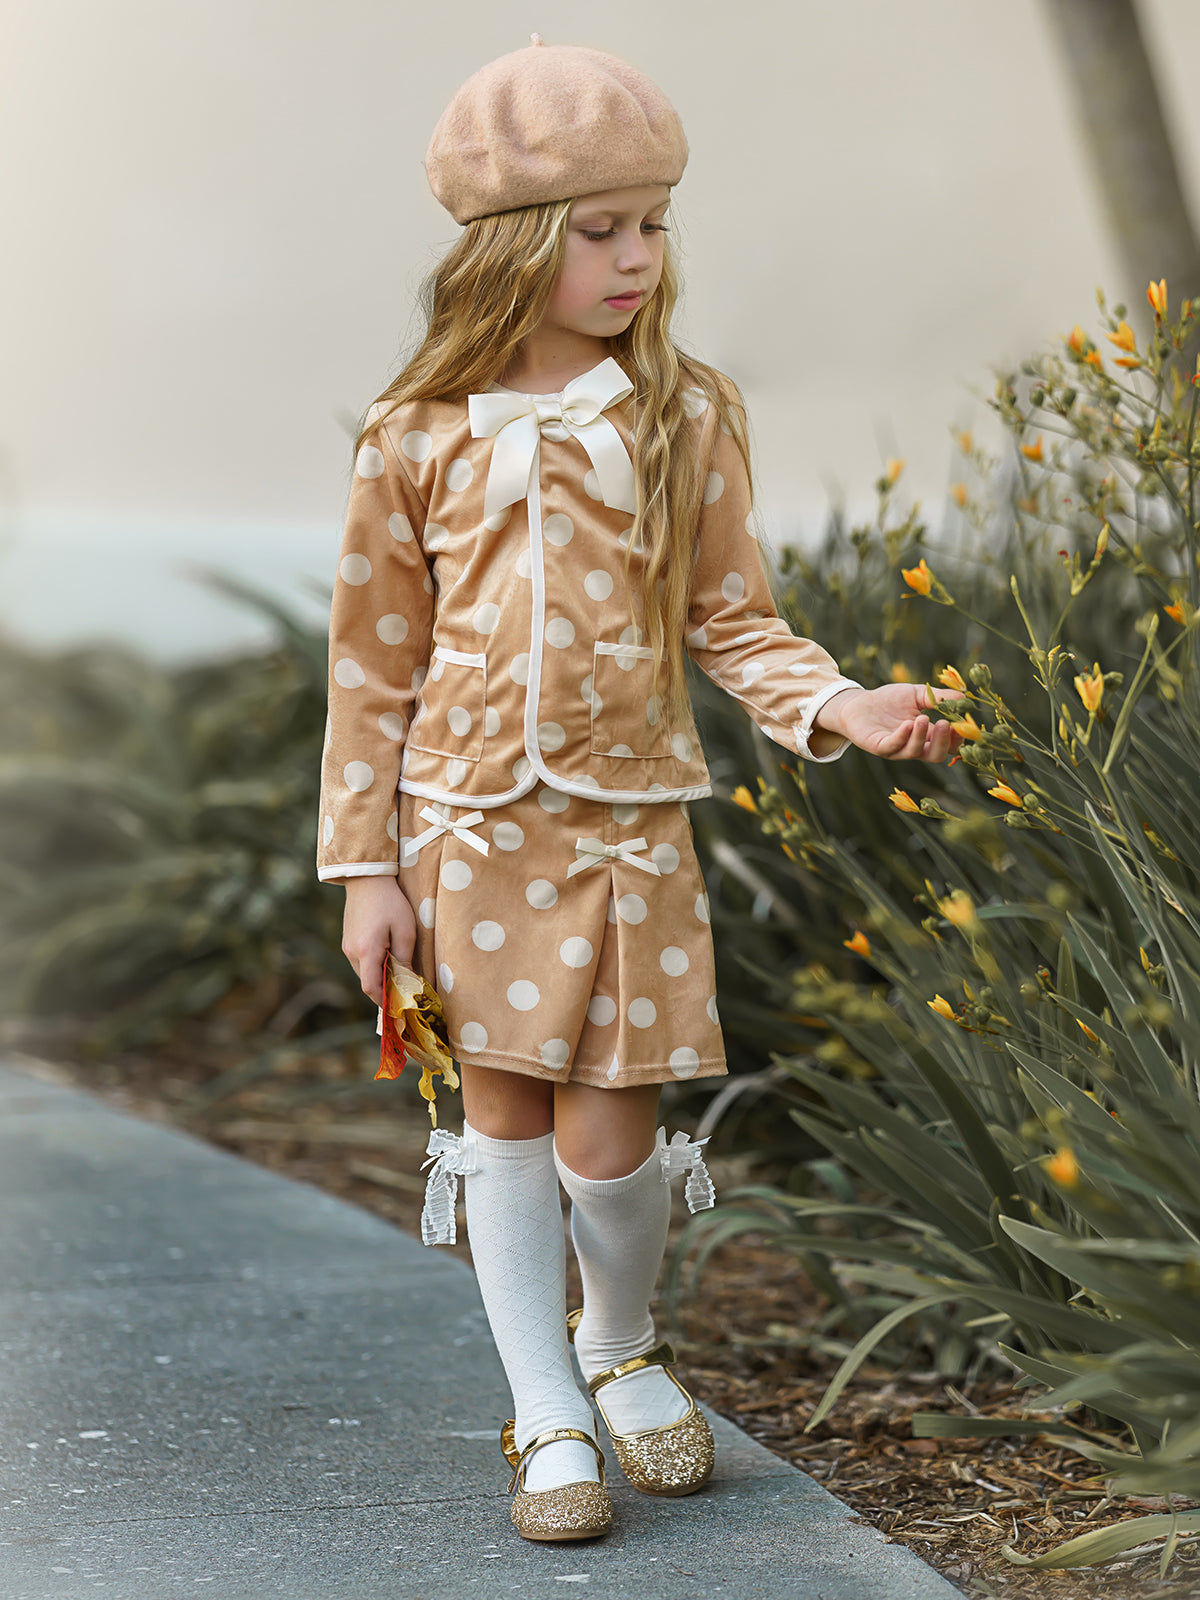 Preppy Spring Fashion | Little Girls Polka Dot Blazer & Skirt Set